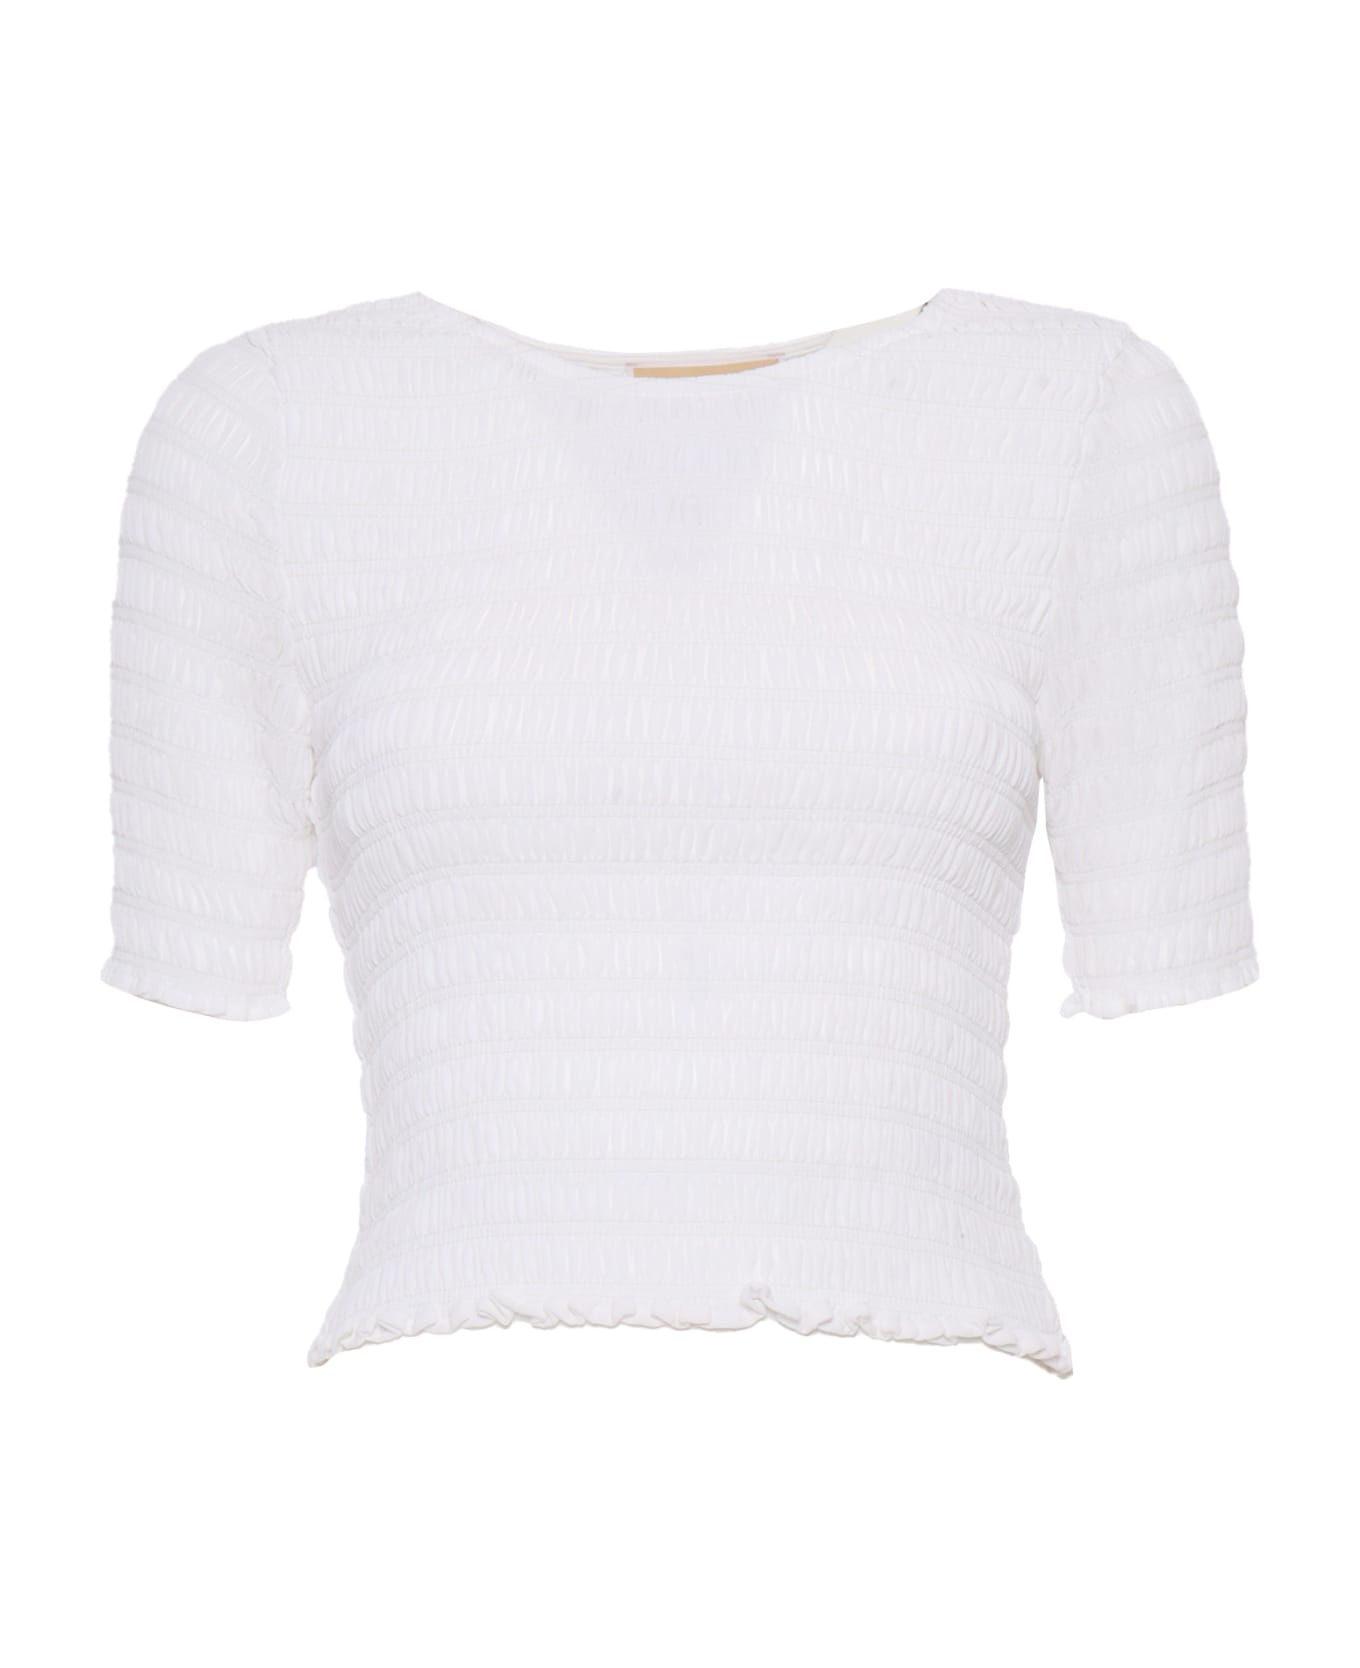 Michael Kors White Elastic Stretch T-shirt - White Tシャツ